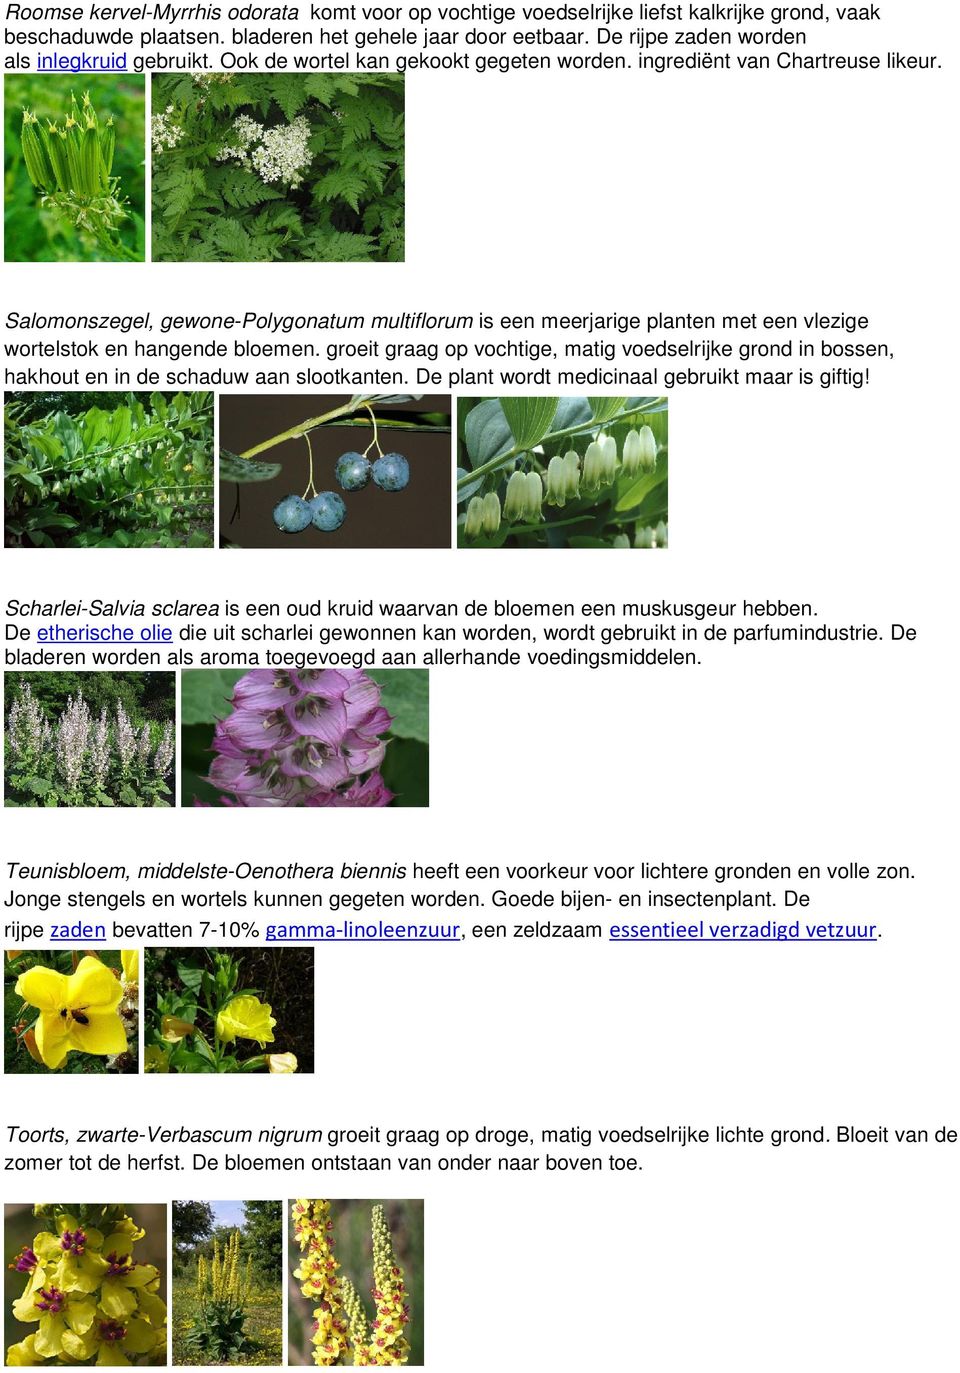 Salomonszegel, gewone-polygonatum multiflorum is een meerjarige planten met een vlezige wortelstok en hangende bloemen.